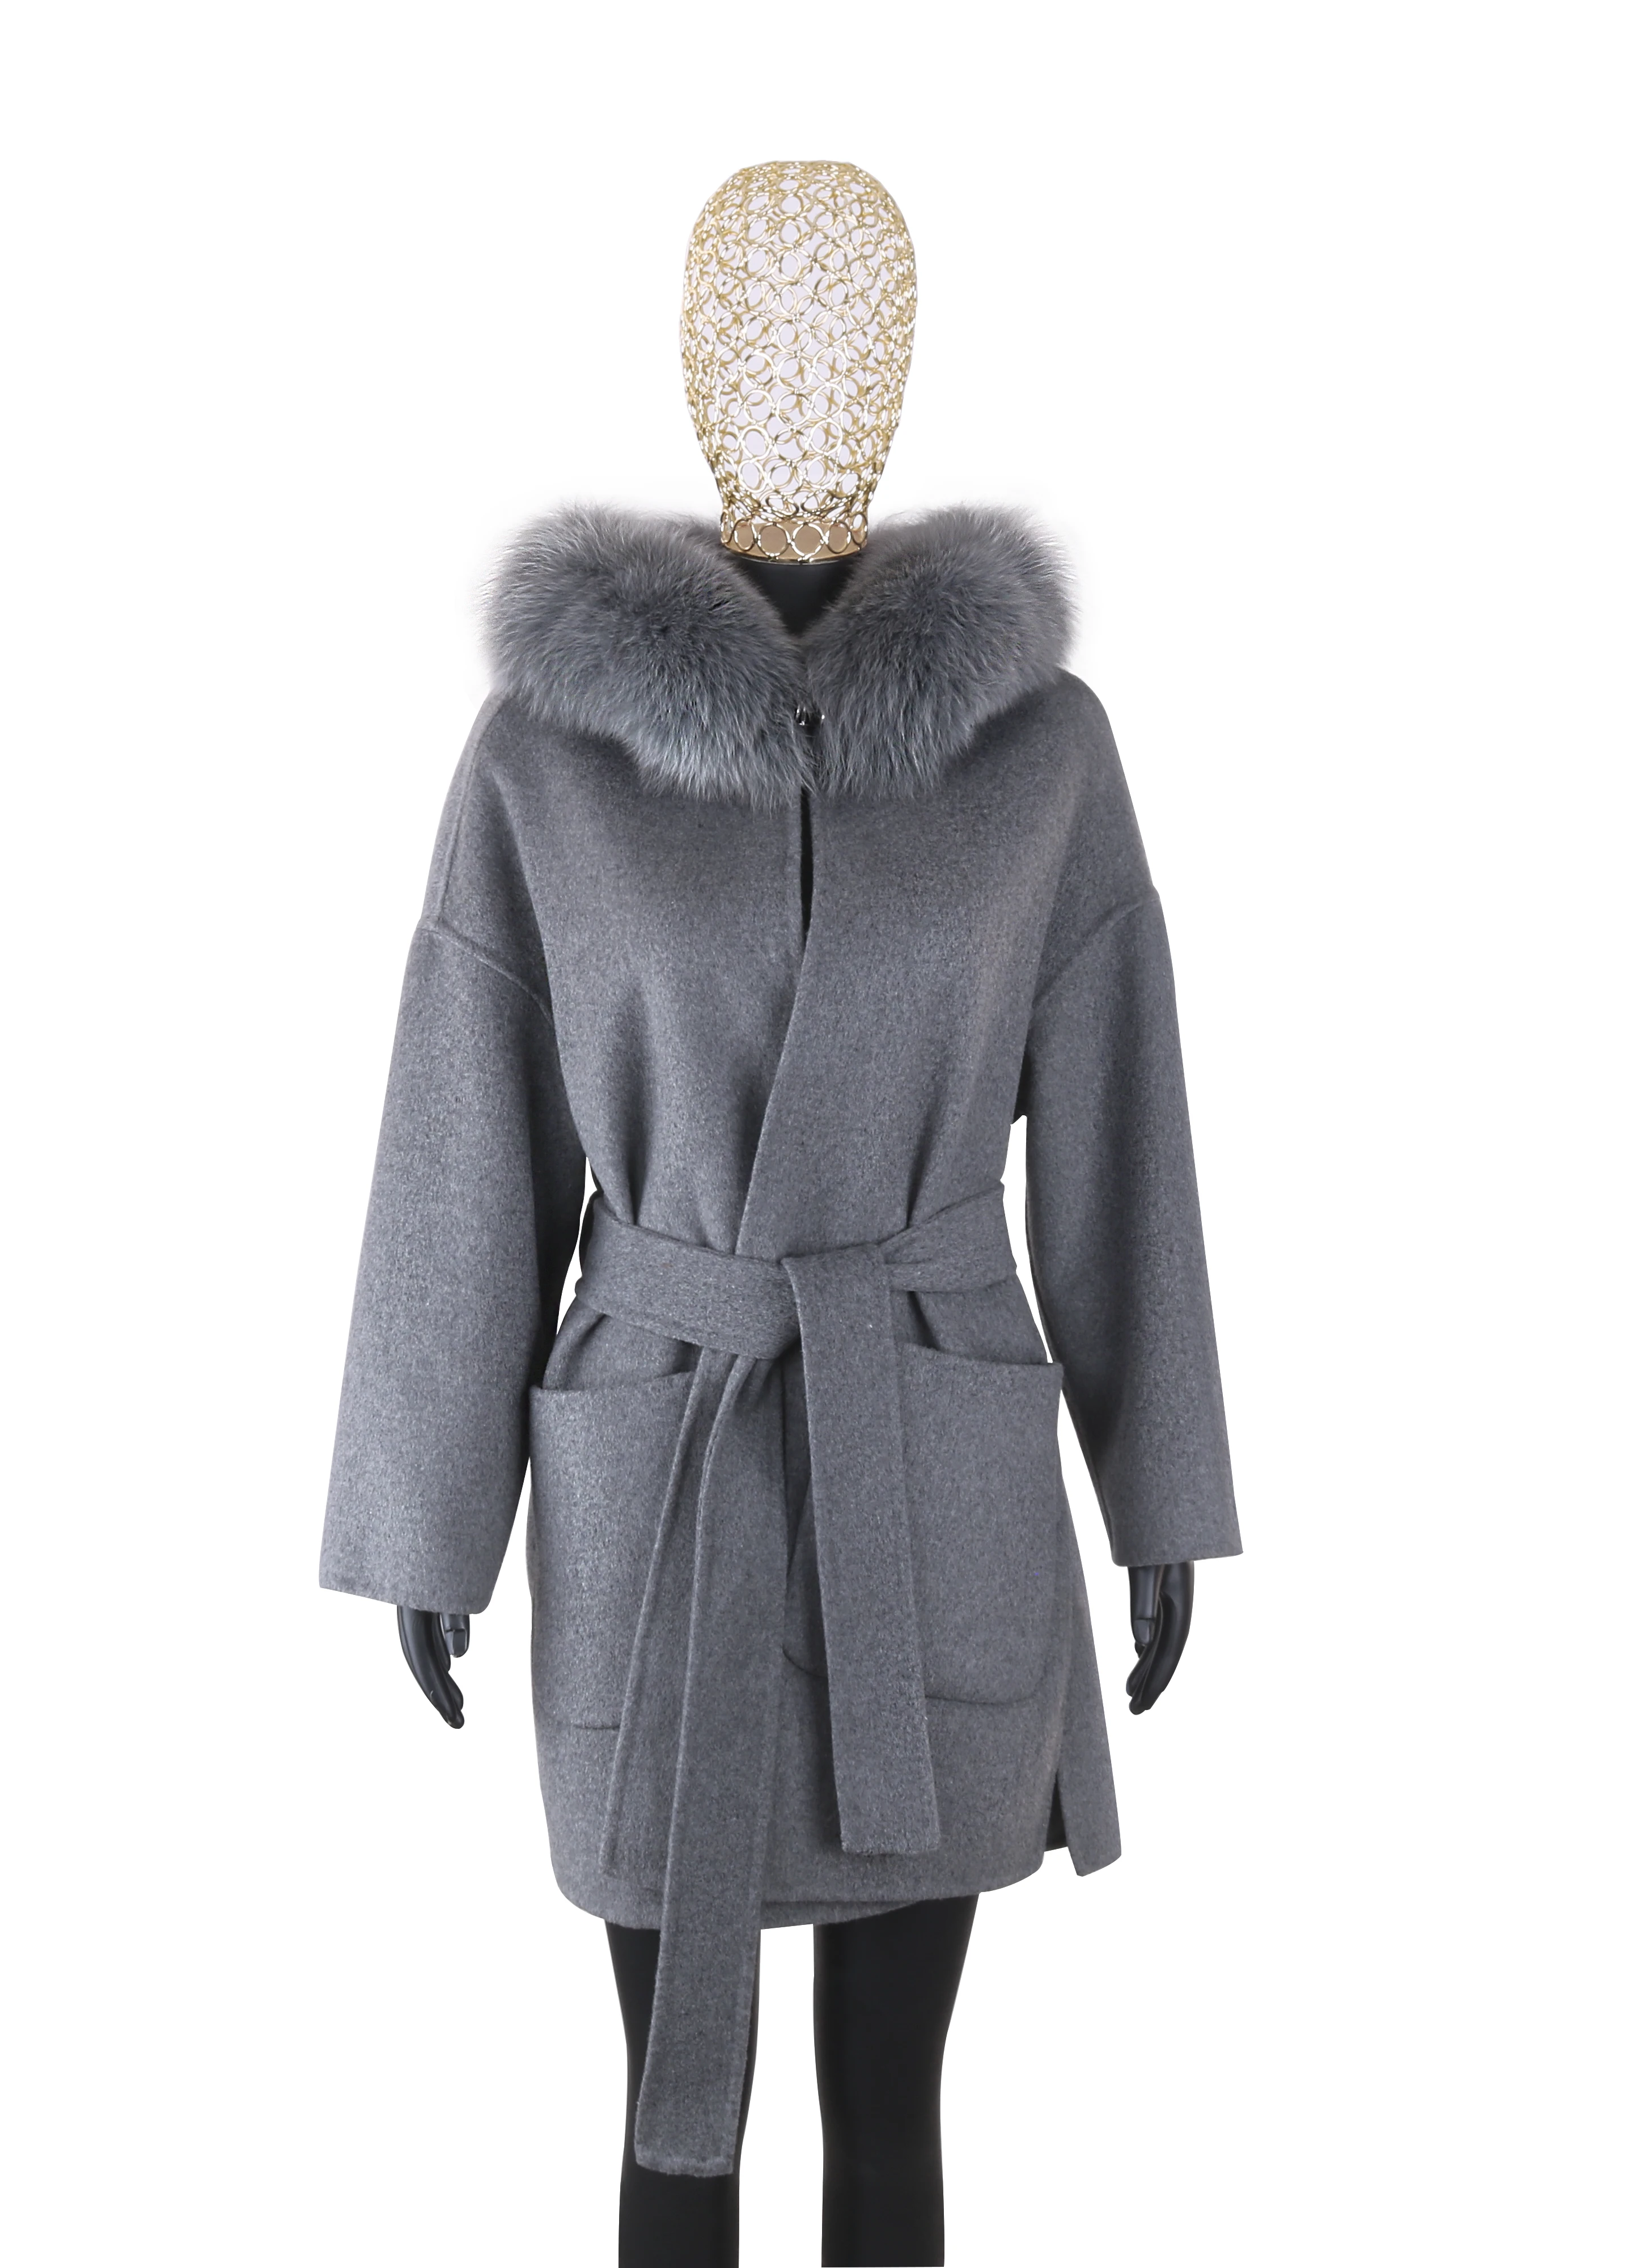 New 2023 Real Fur Coat Winter Jacket Women 100% Natural Fox Fur Collar Cuffs Cashmere Wool Blends Oversize Outerwear